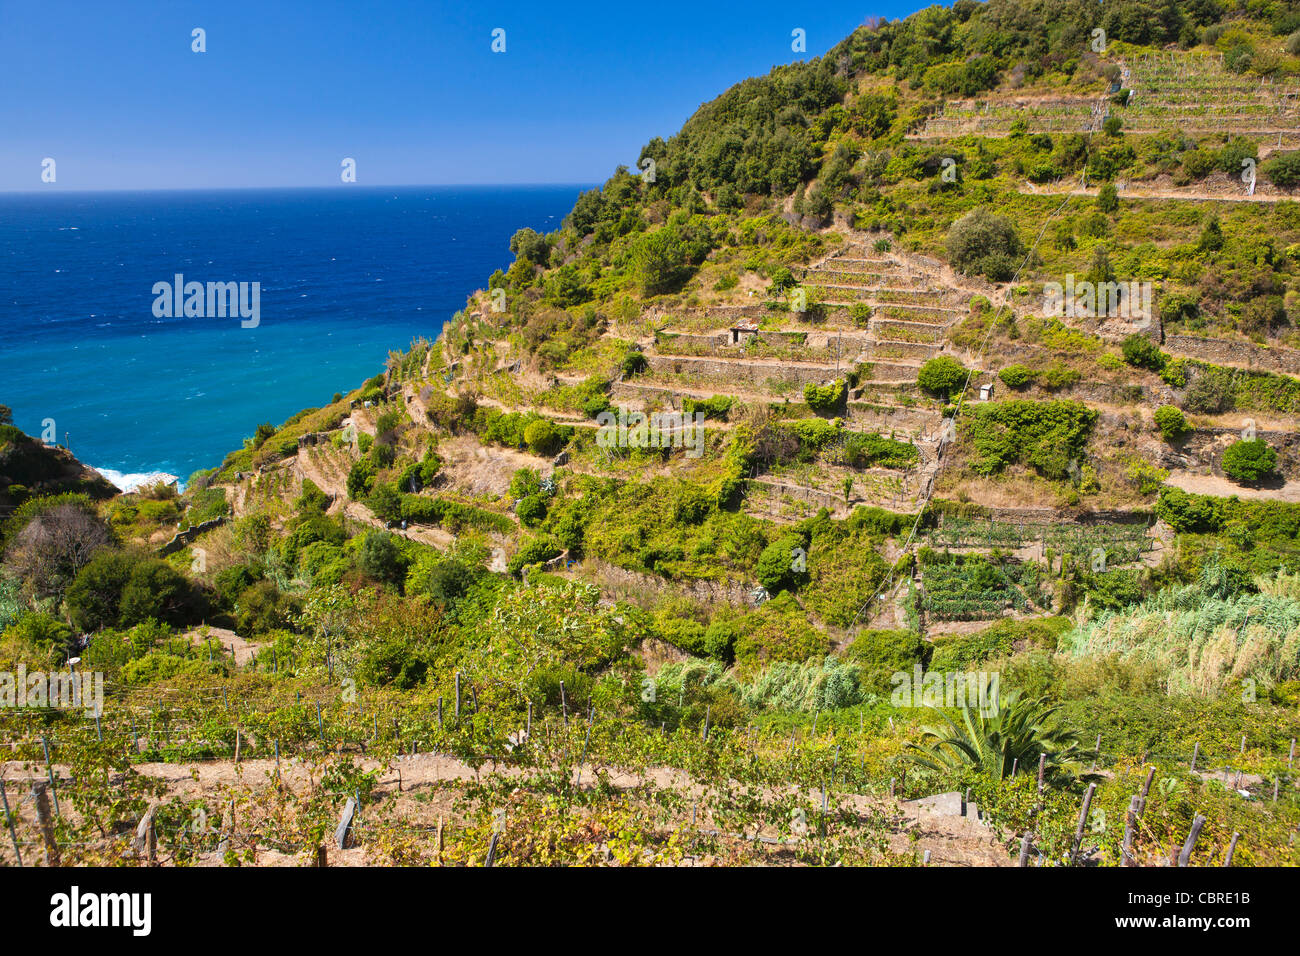 Corniglia (fraction) of the commune of Vernazza in the province of La Spezia, Liguria, northern Italy, Europe Stock Photo